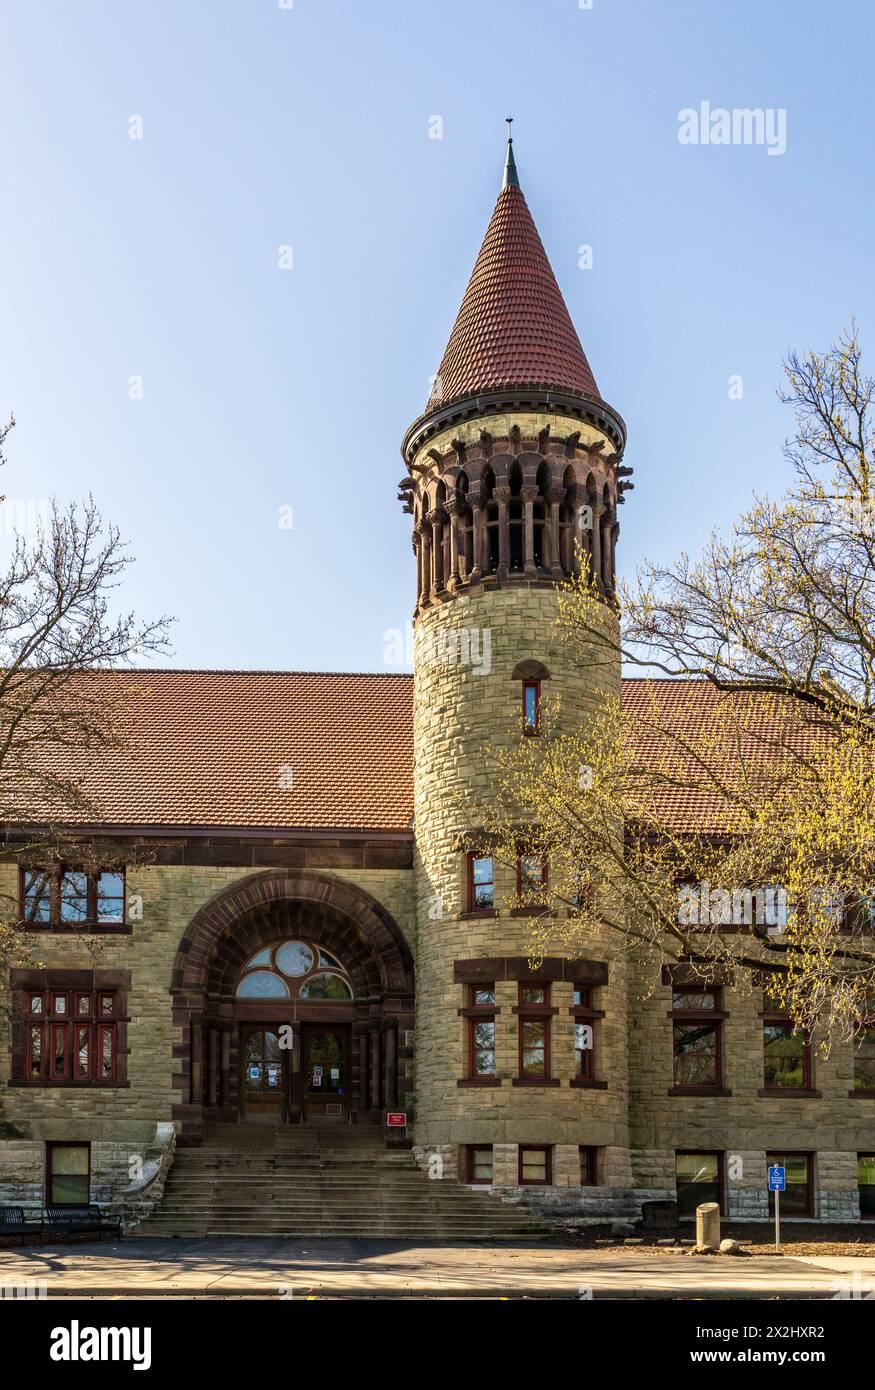 Facciata della storica Orton Hall costruita nel 1893 e ora simbolo iconico della Ohio State University a Columbus, OHIO Foto Stock